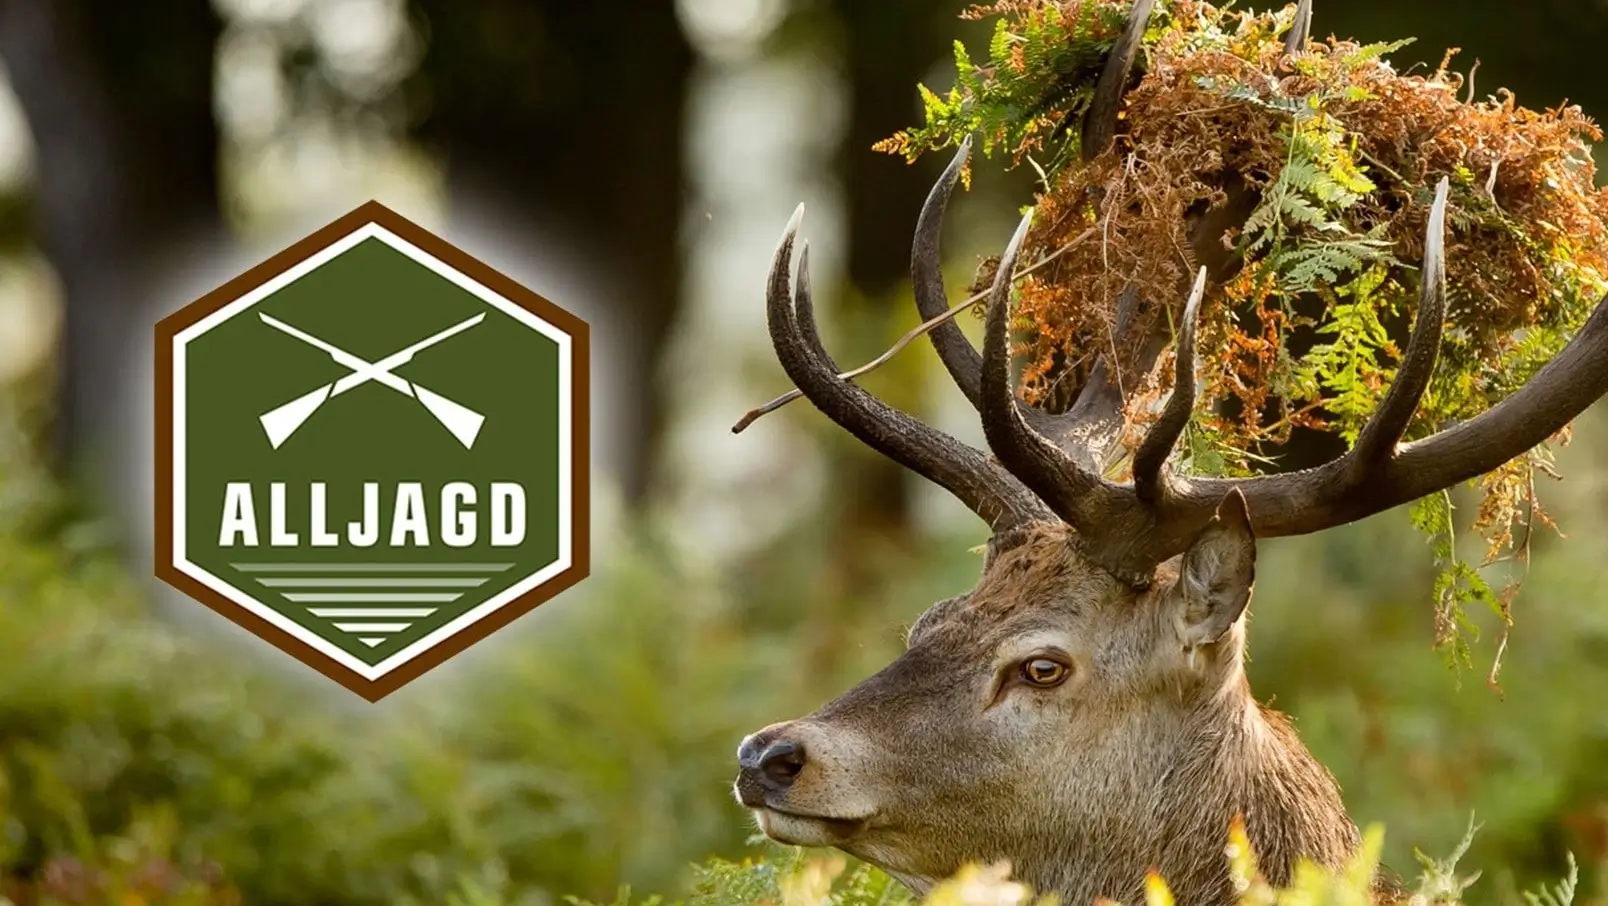 Hirsch im Wald mit eingefügtem Alljagd-Logo